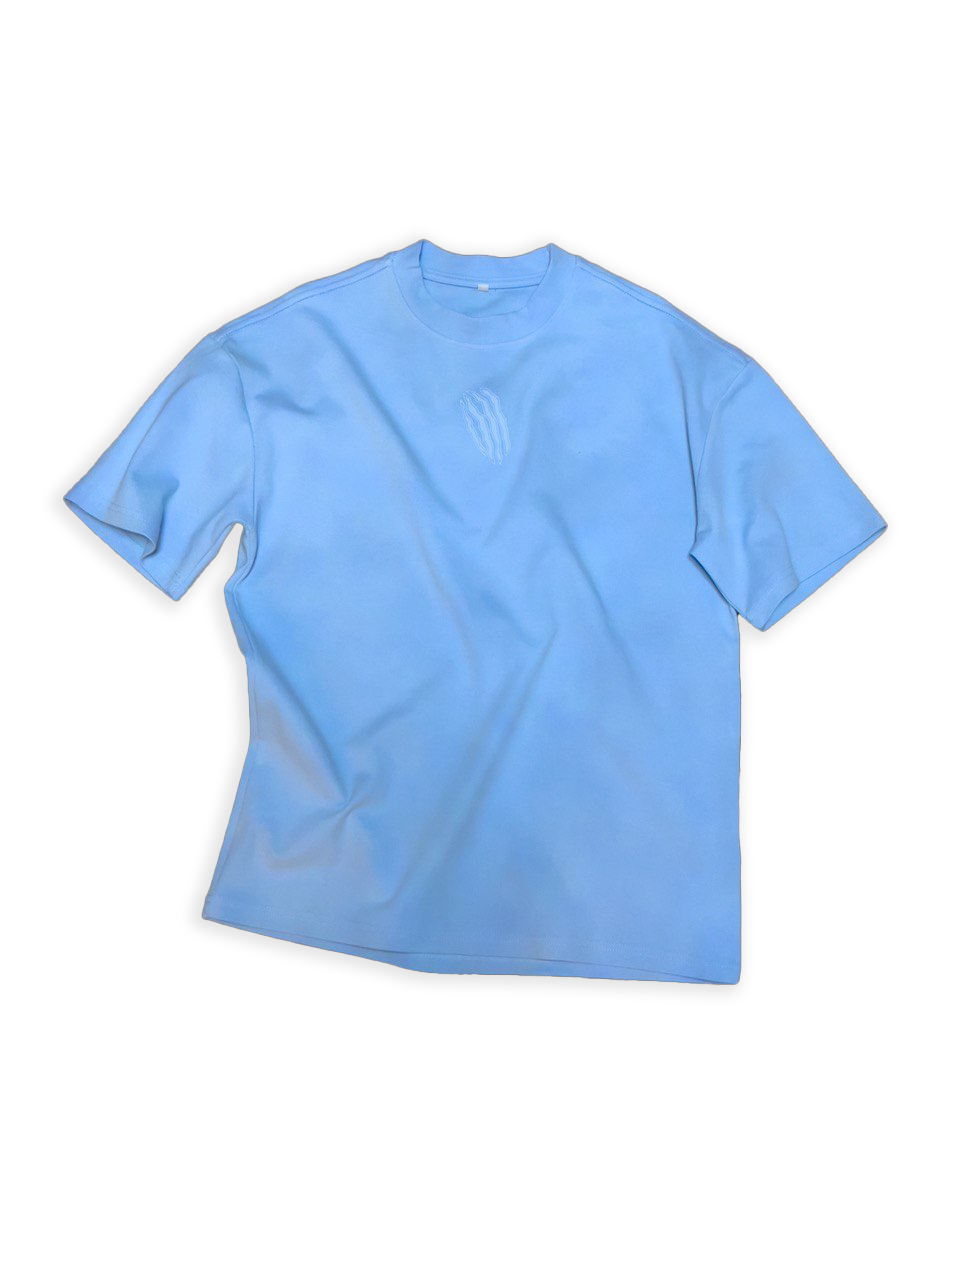 Light blue oversize t shirt